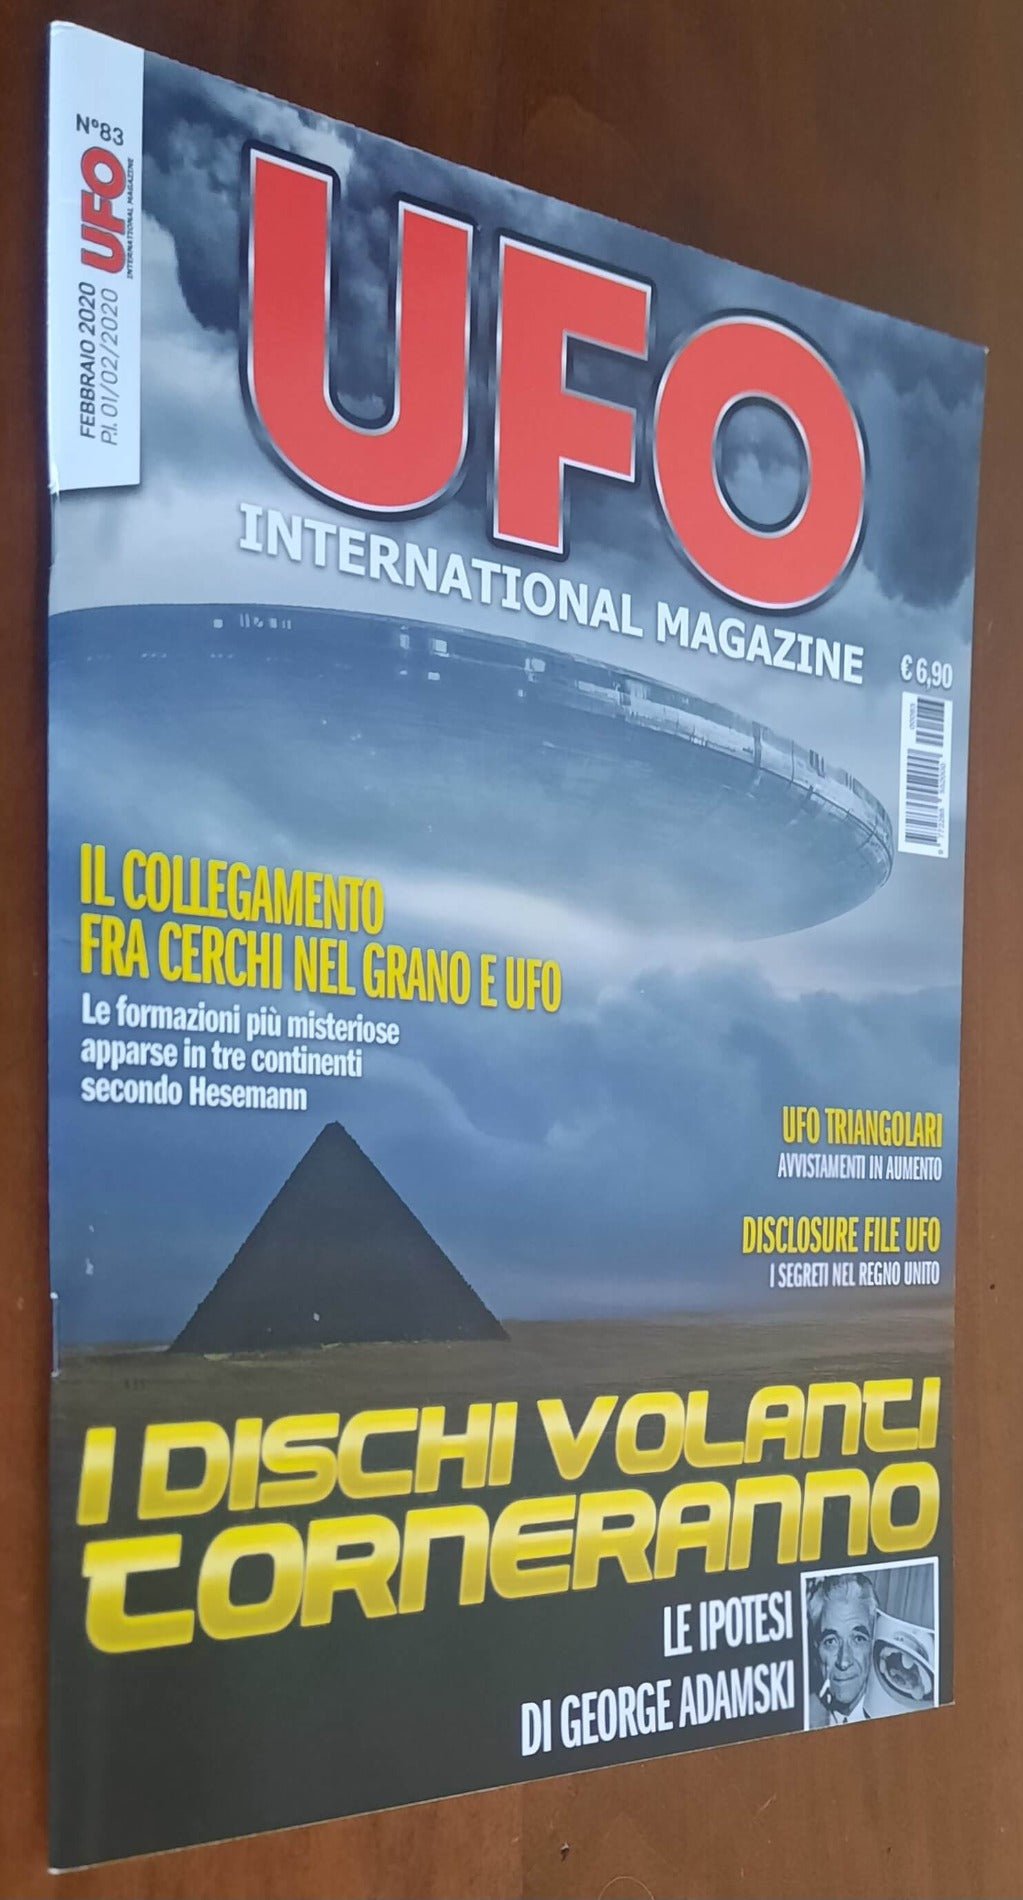 UFO International Magazine - Febbraio 2020 - n. 83